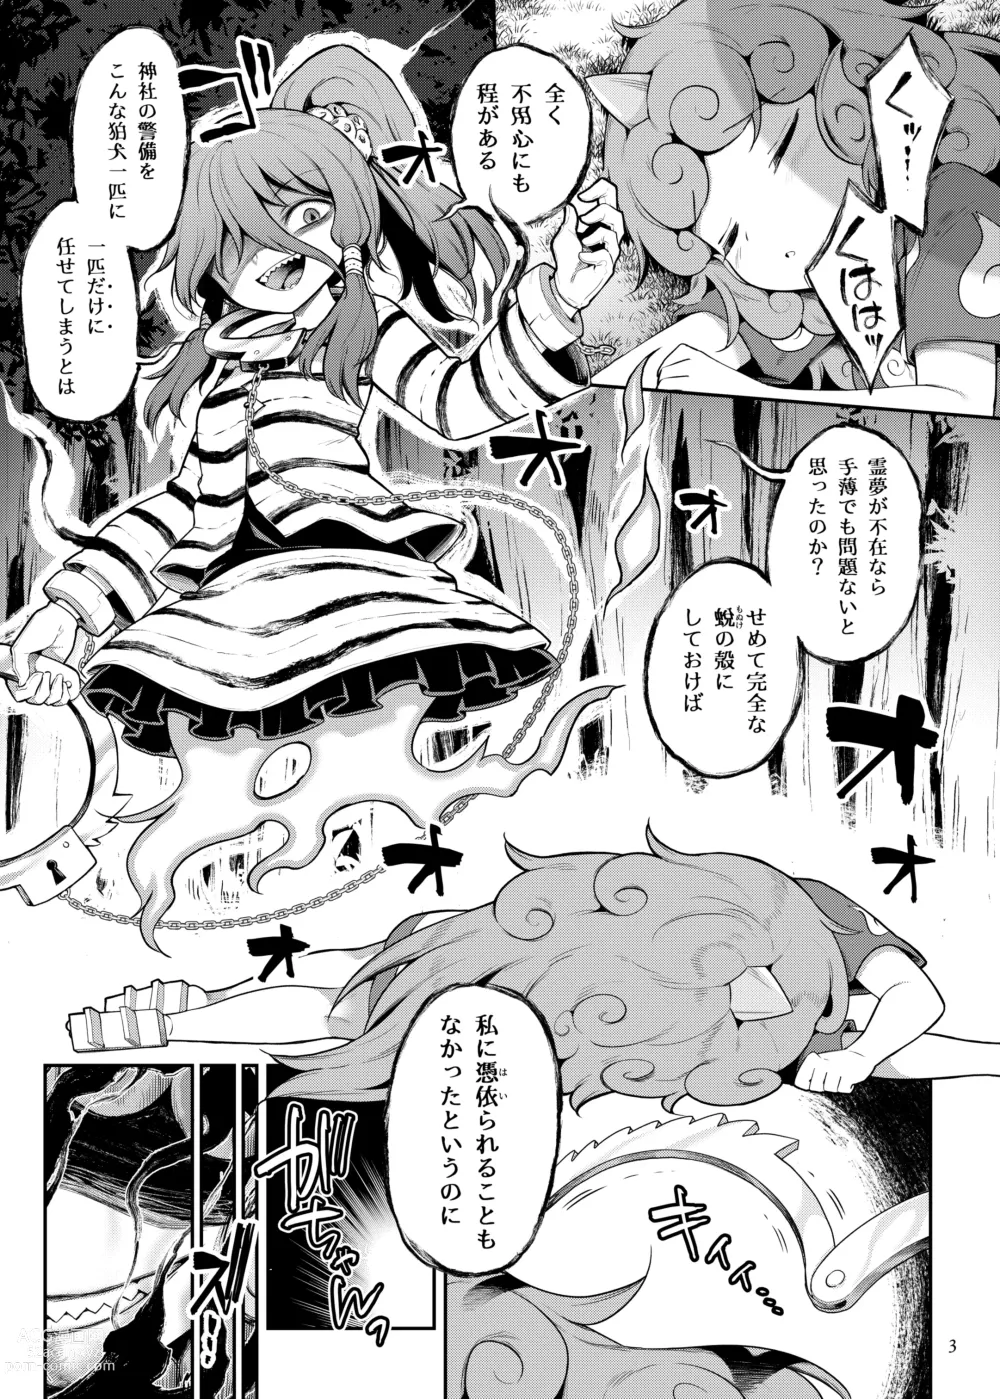 Page 3 of doujinshi Komano Aunn no Onryou Taiji